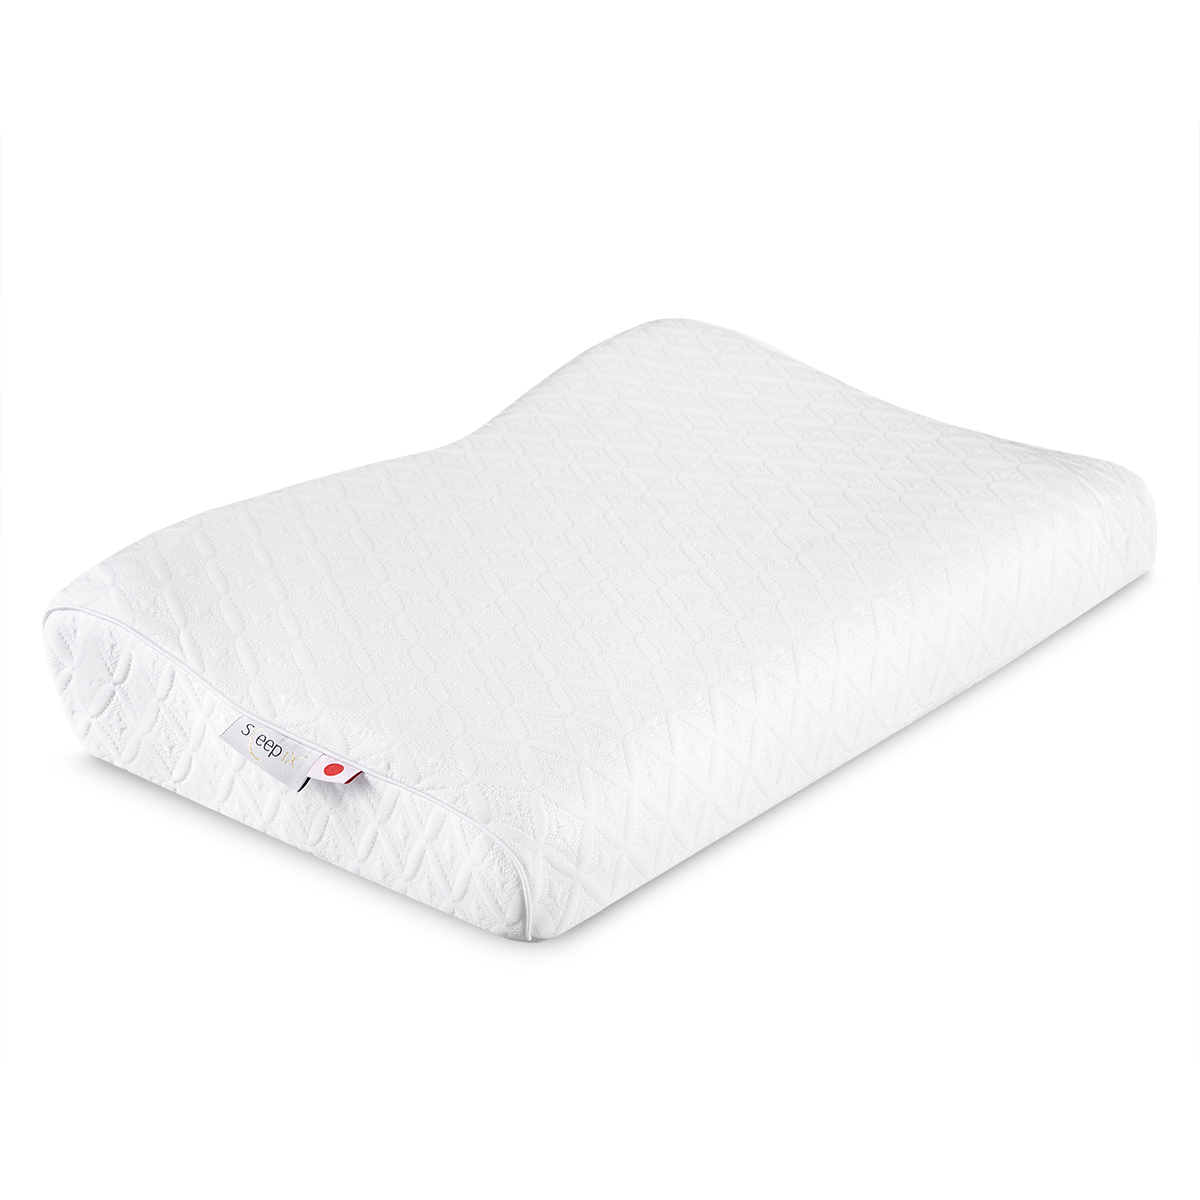 Анатомическая подушка Sleepix Нарита белая 54х32х6/10 см, цвет белый - фото 1